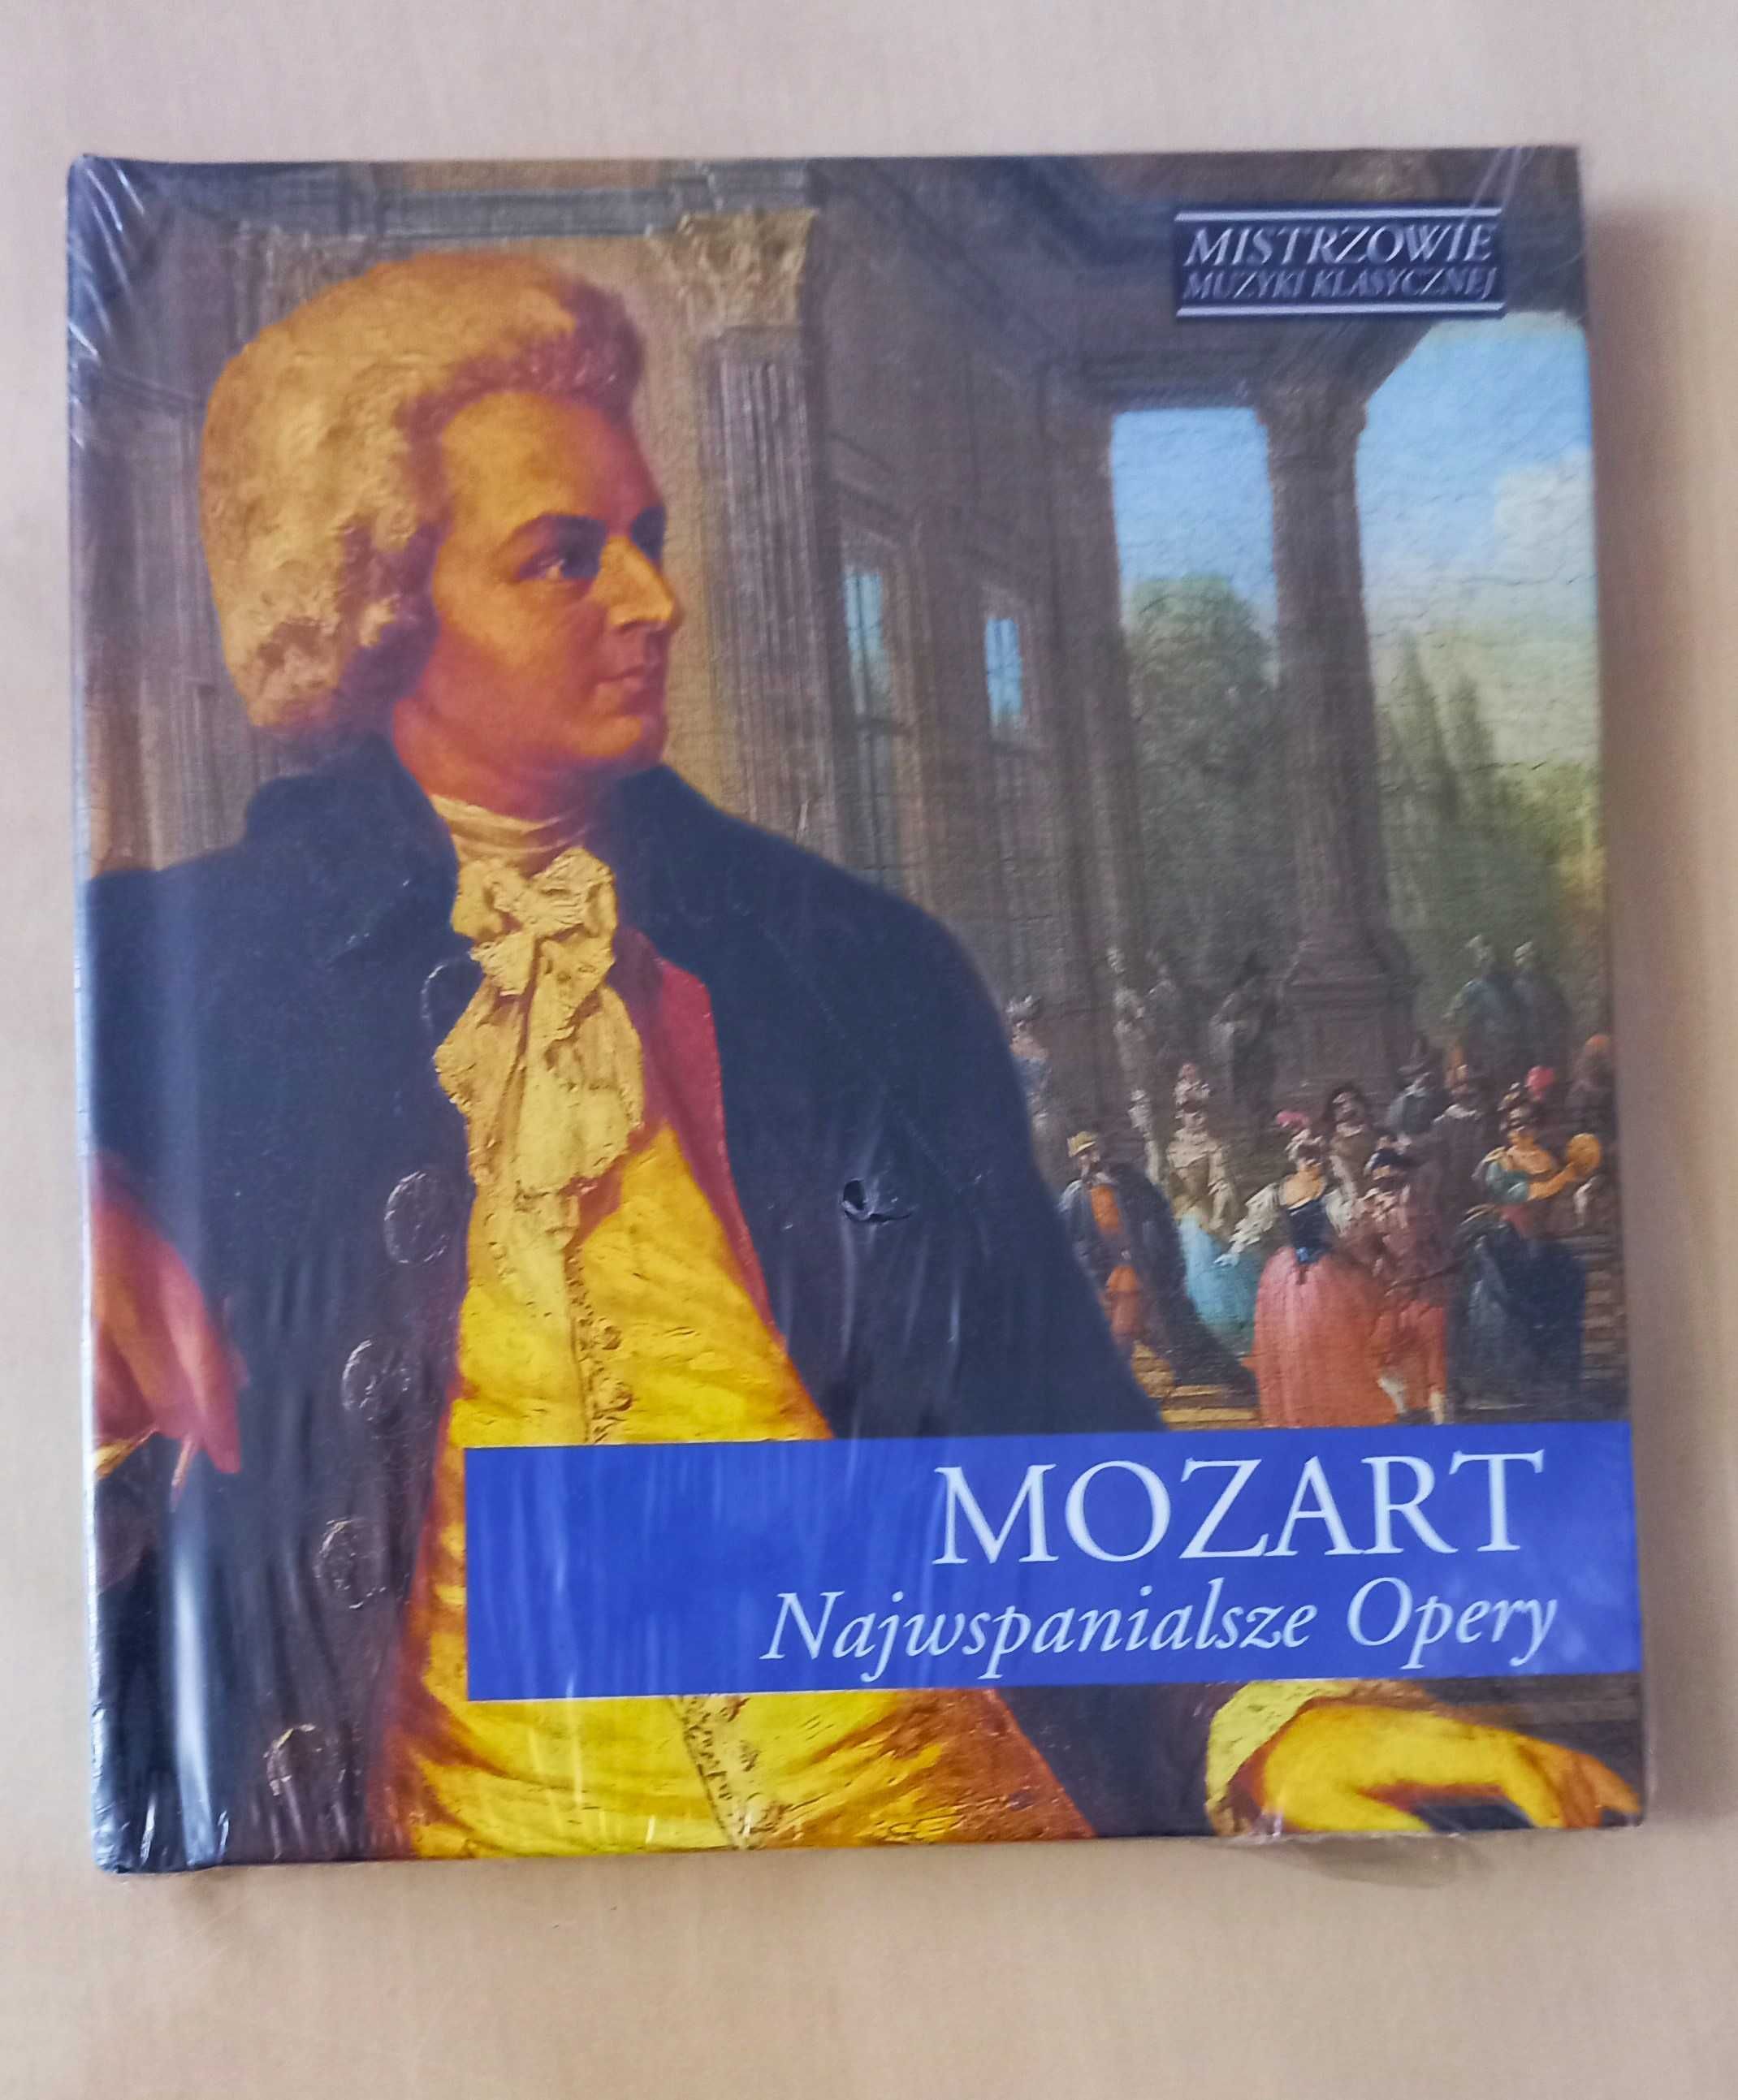 Nowa płyta CD Mozart Najwspanialsze opery Mistrzowie muzyki klasycznej